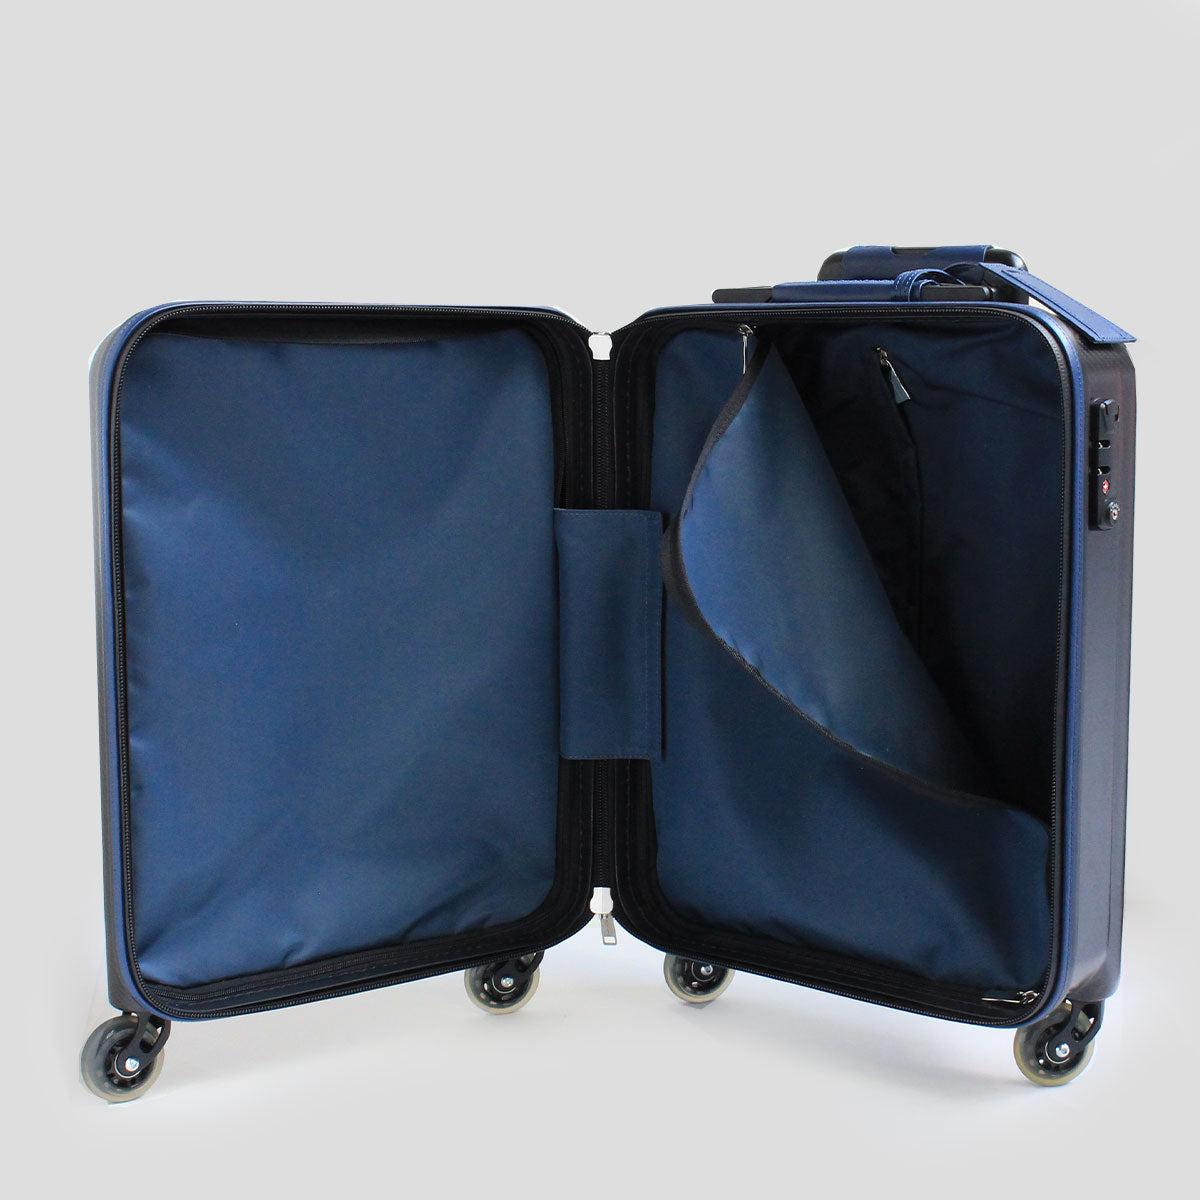 TecknoMonster／テクノモンスター キャリーバッグ スーツケース 33L 機内持ち込み可 カーボンファイバー マットタイプ ブルーネイビー